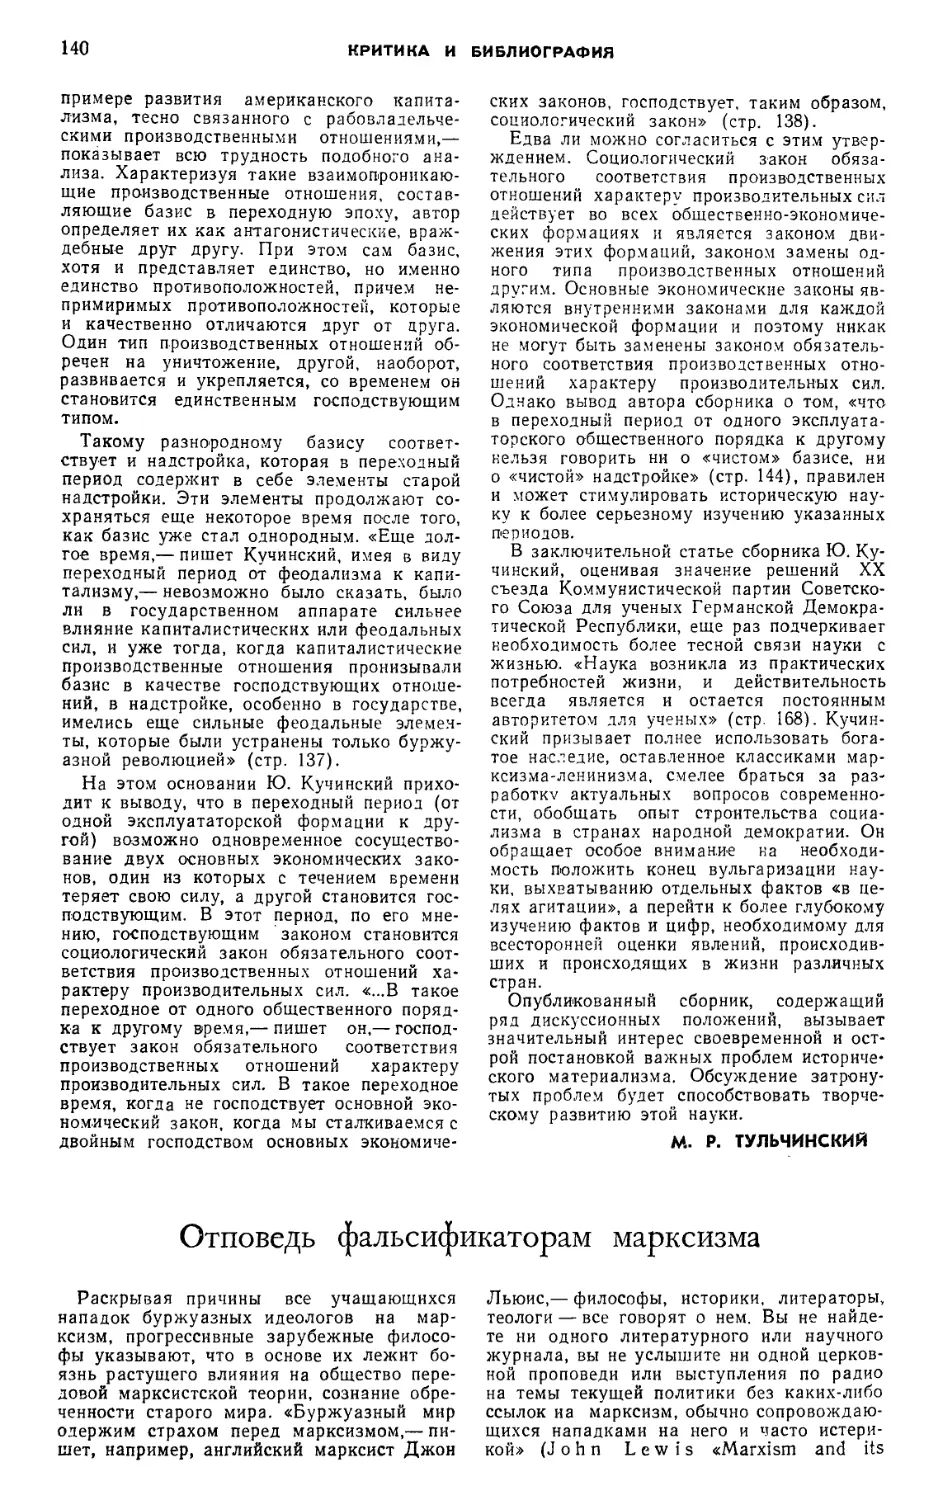 Е. Д. Модржинская — Отповедь фальсификаторам марксизма